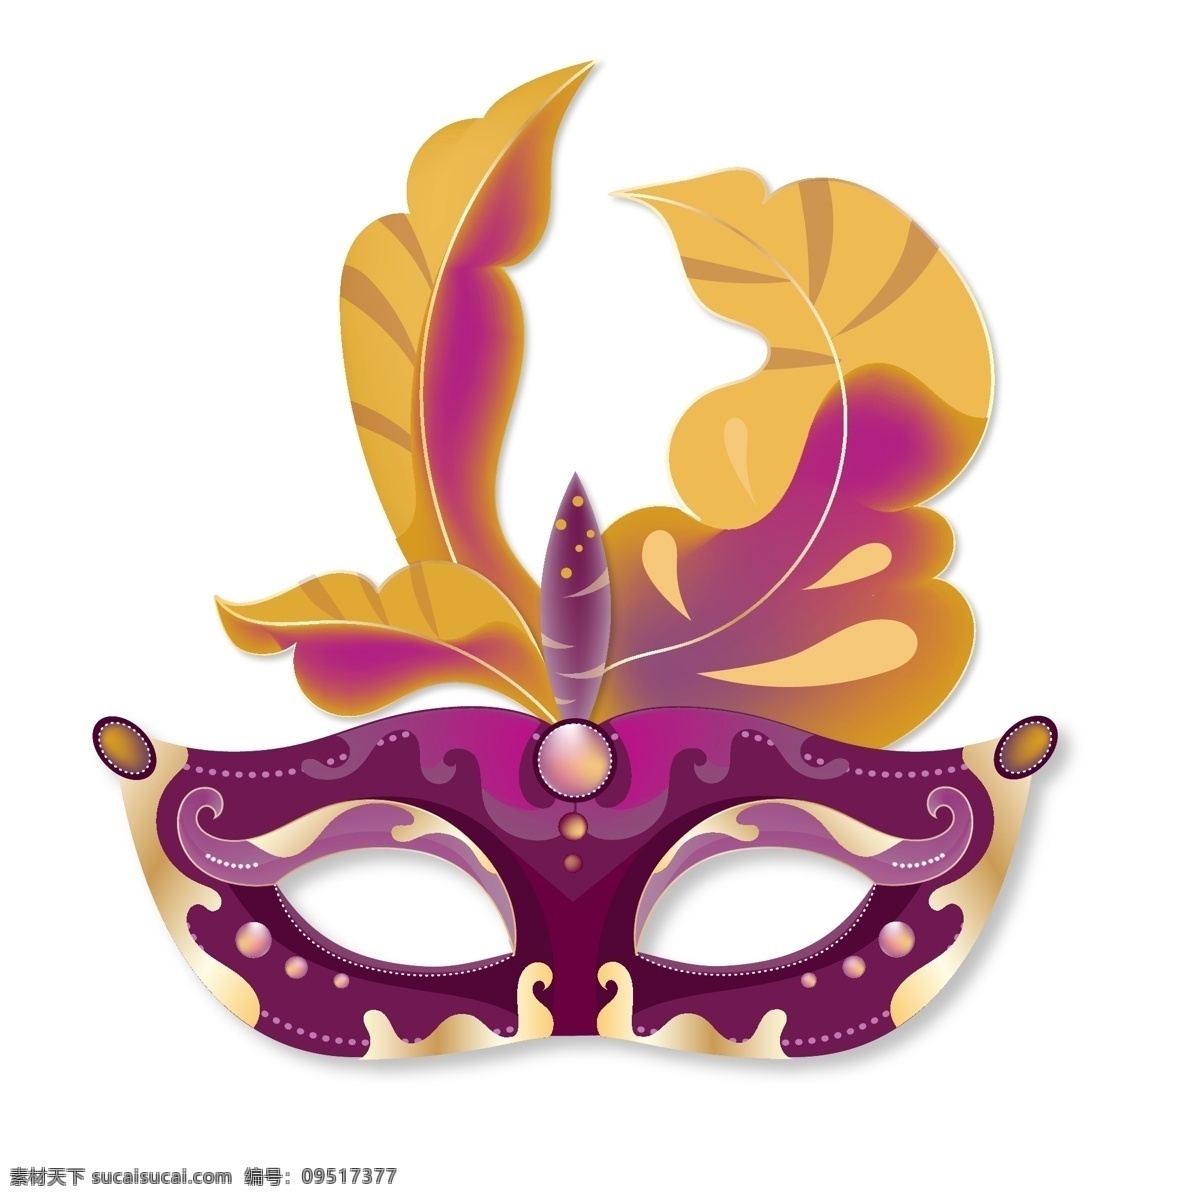 万圣节 紫色 神秘 面具 金色 节日元素